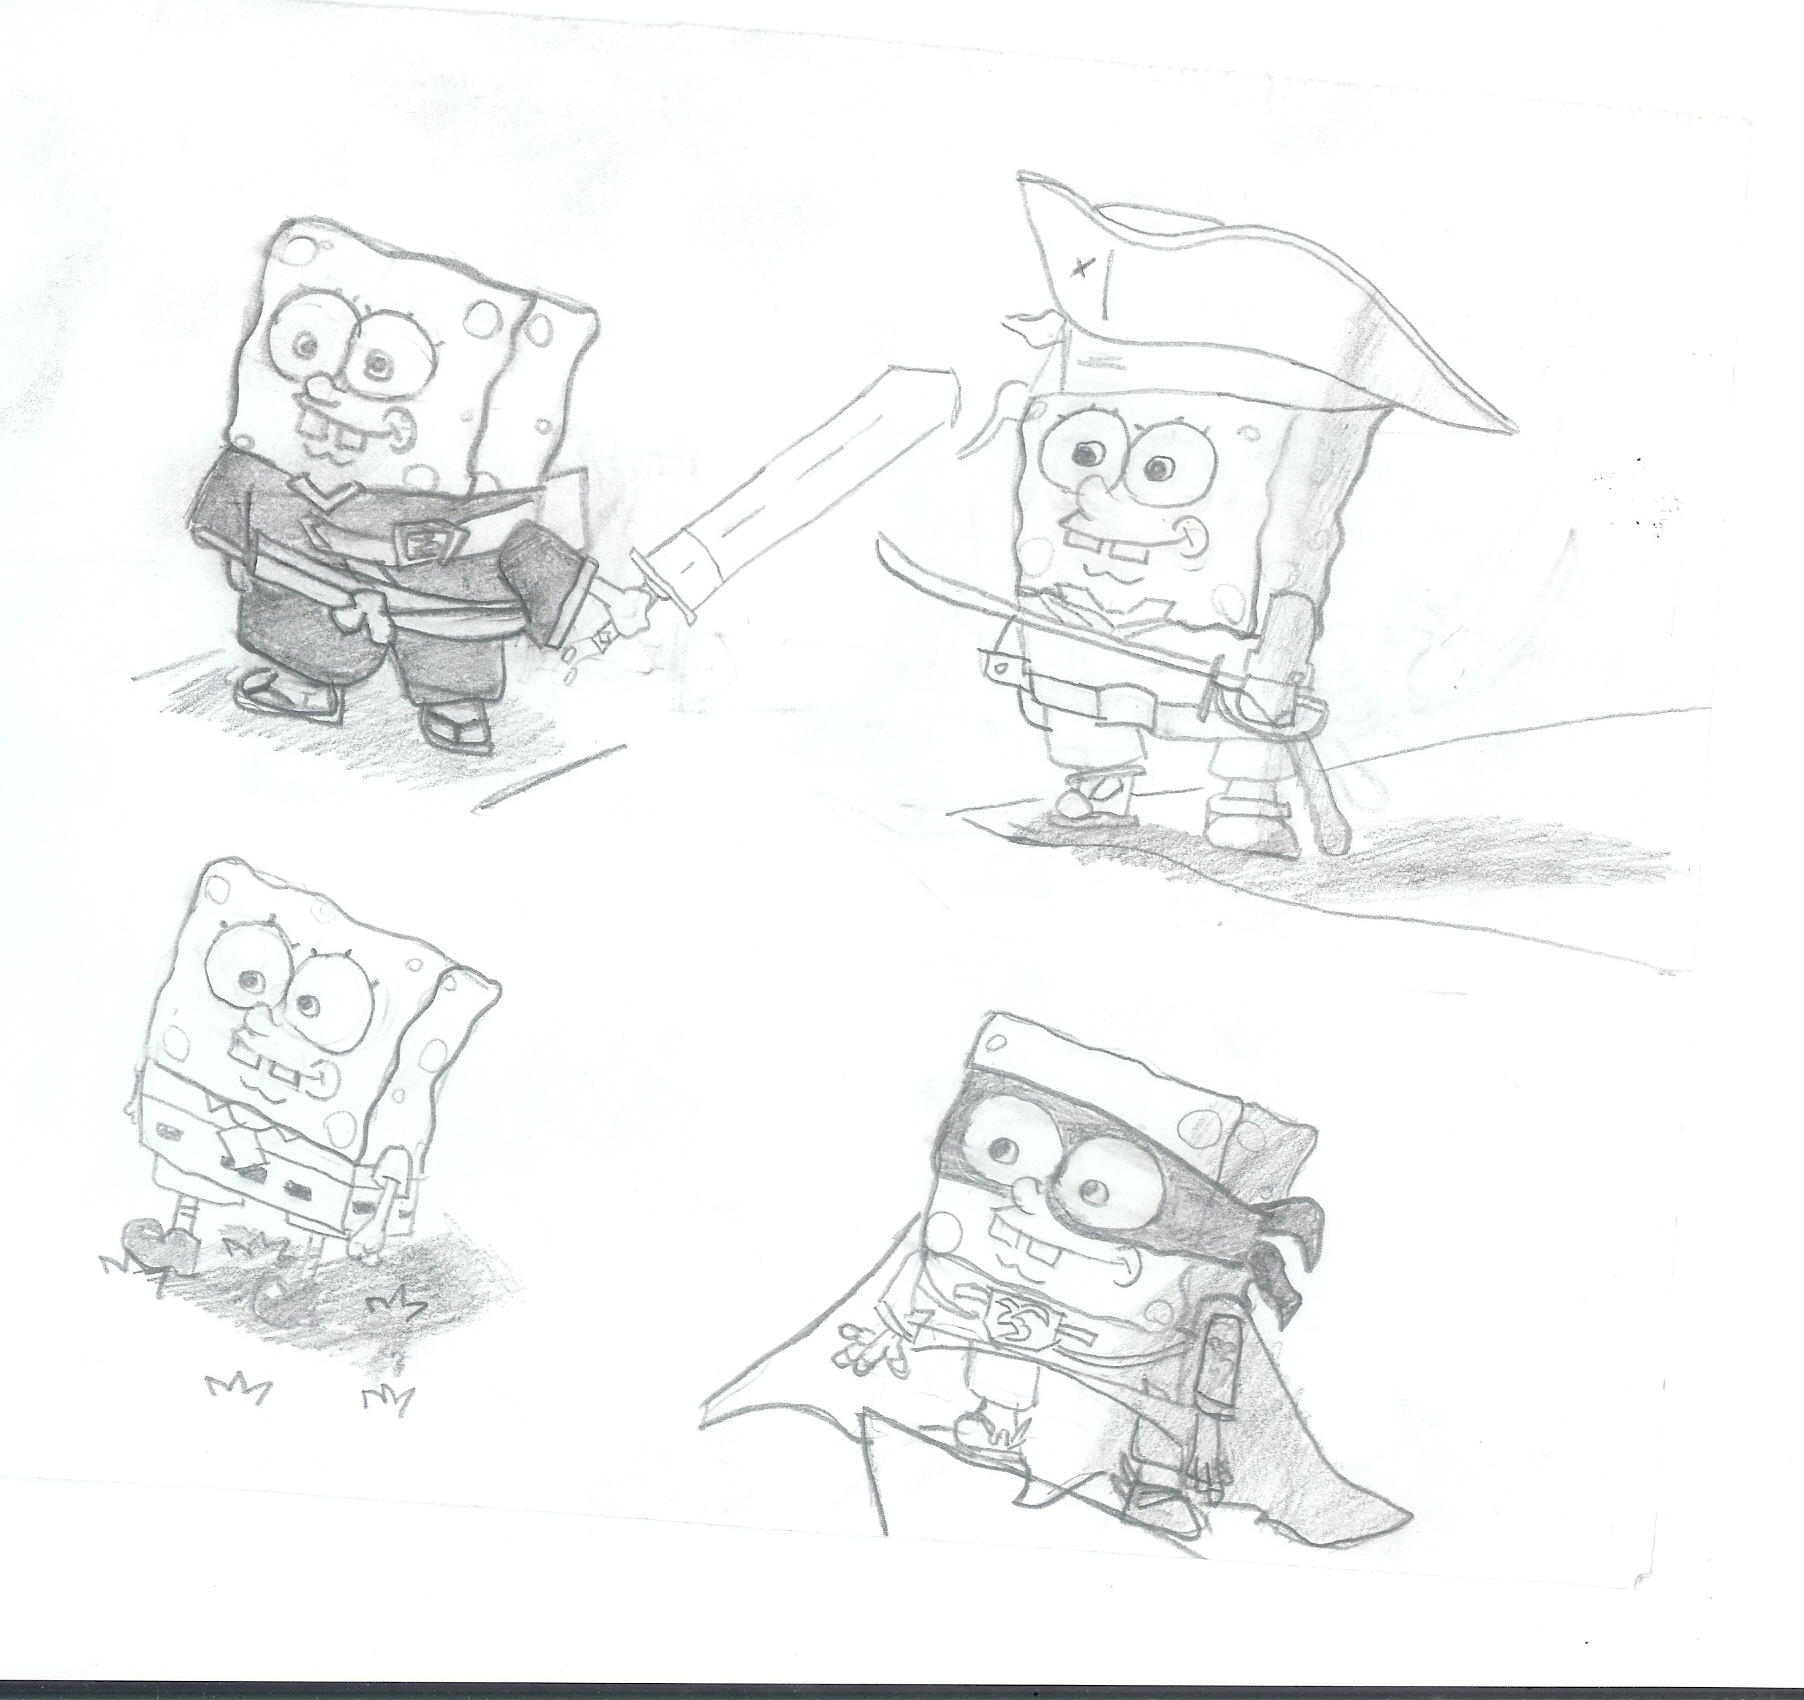 Spongebob experiment